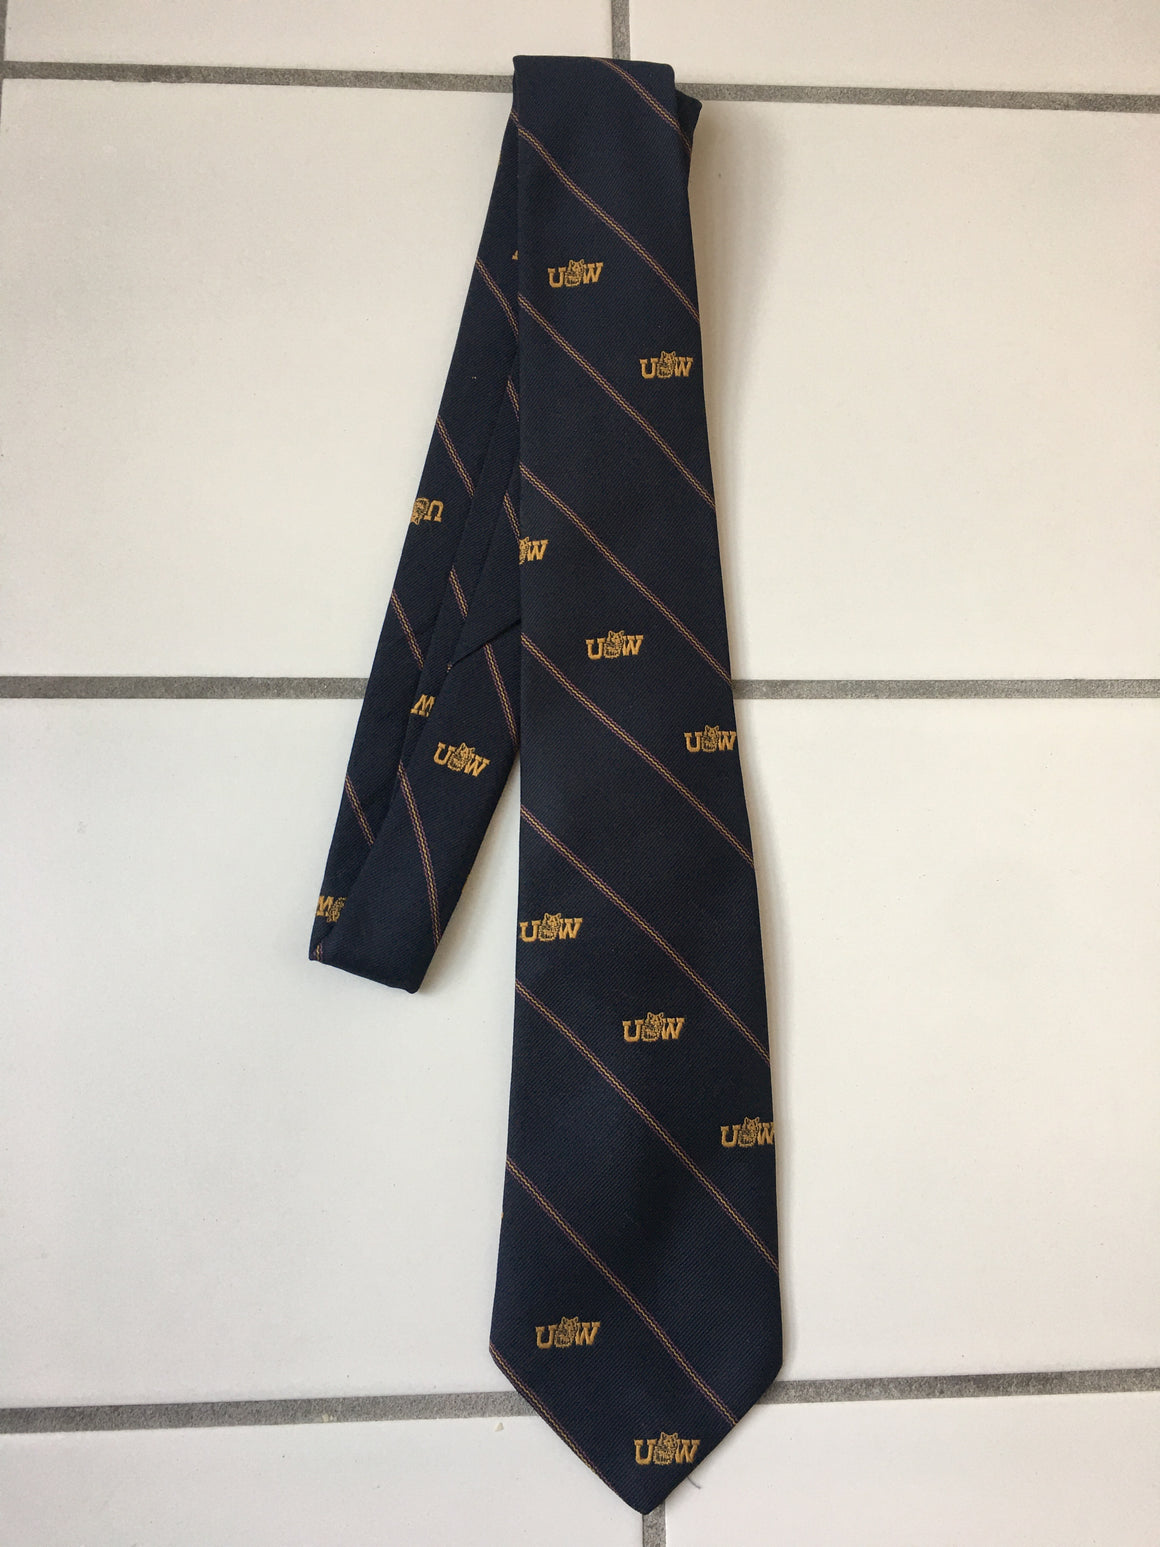 Washington Huskies vintage tie